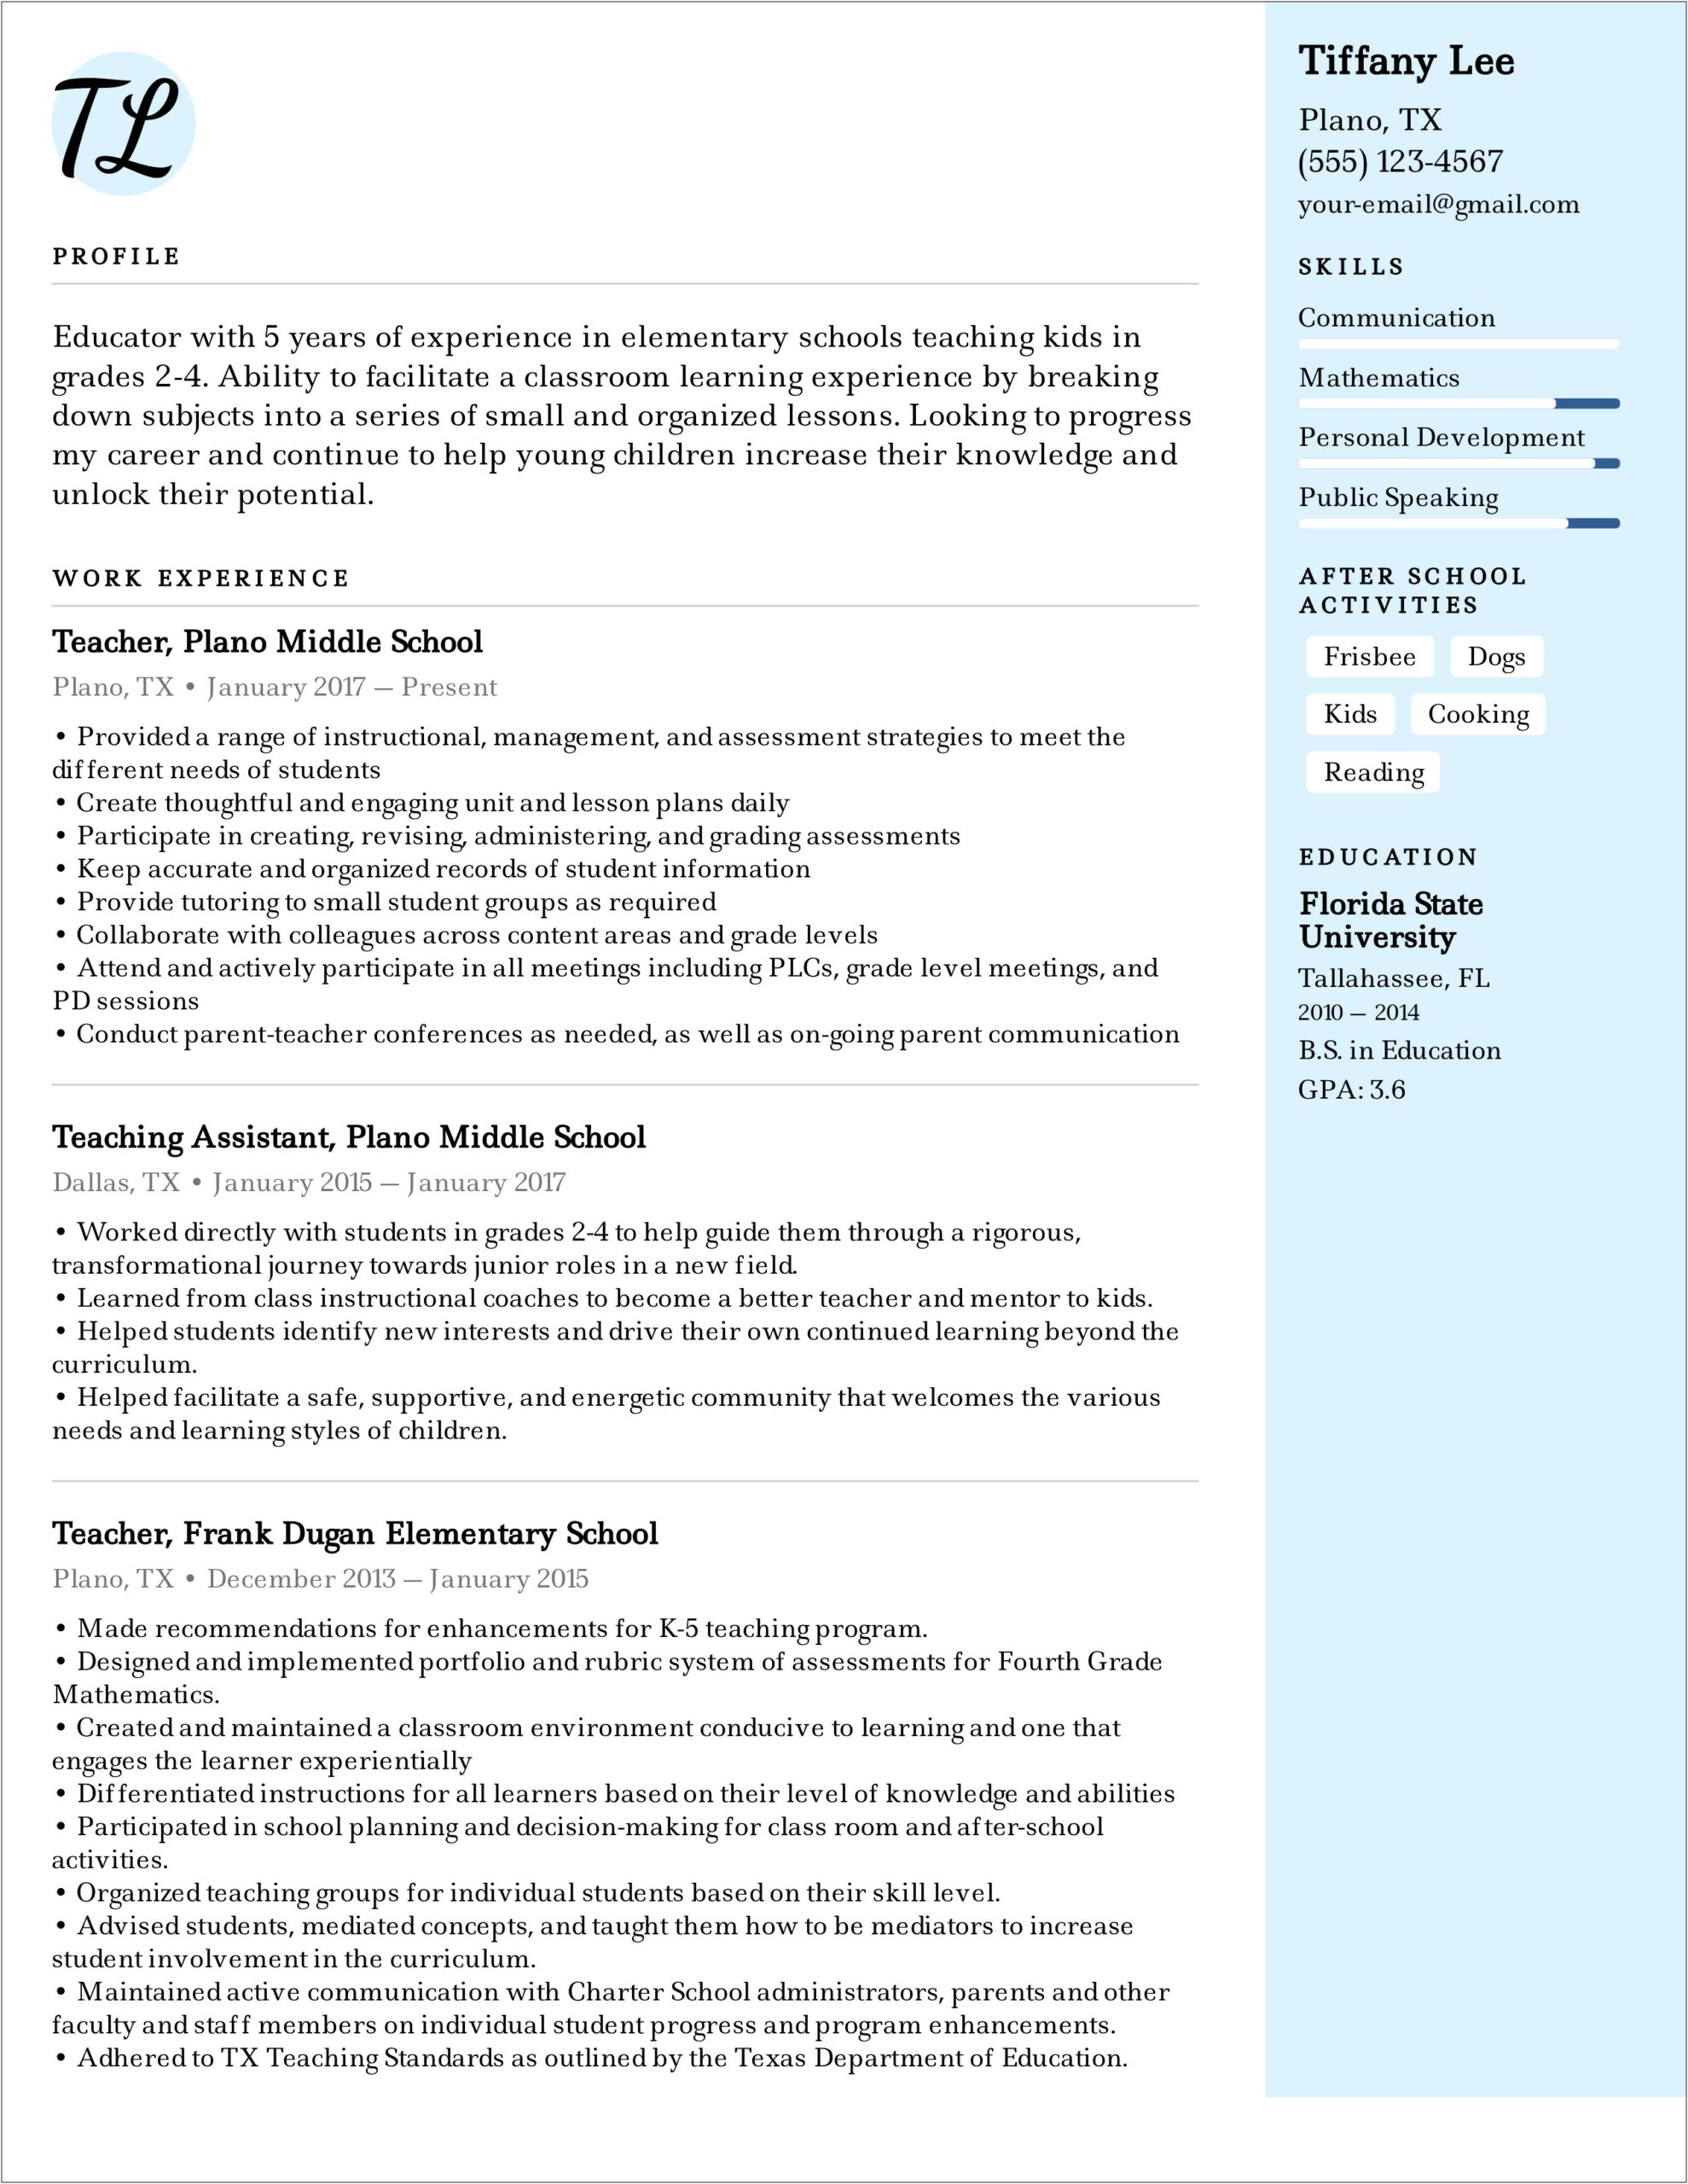 Sample Resume For Private School Teacher